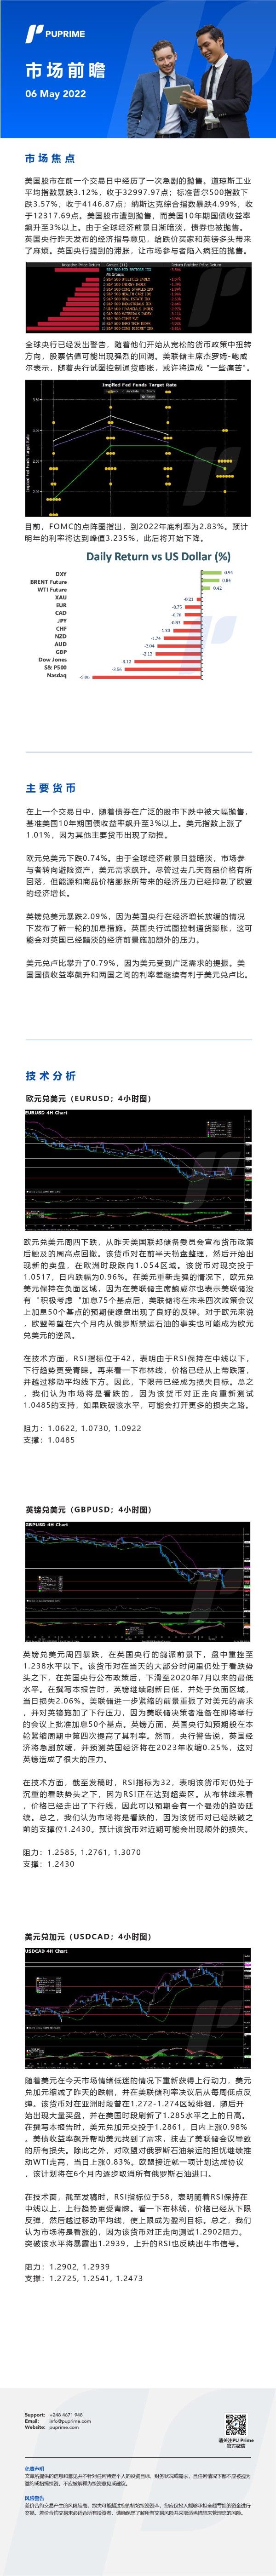 06052022 Daily Market Analysis_CHN.jpg